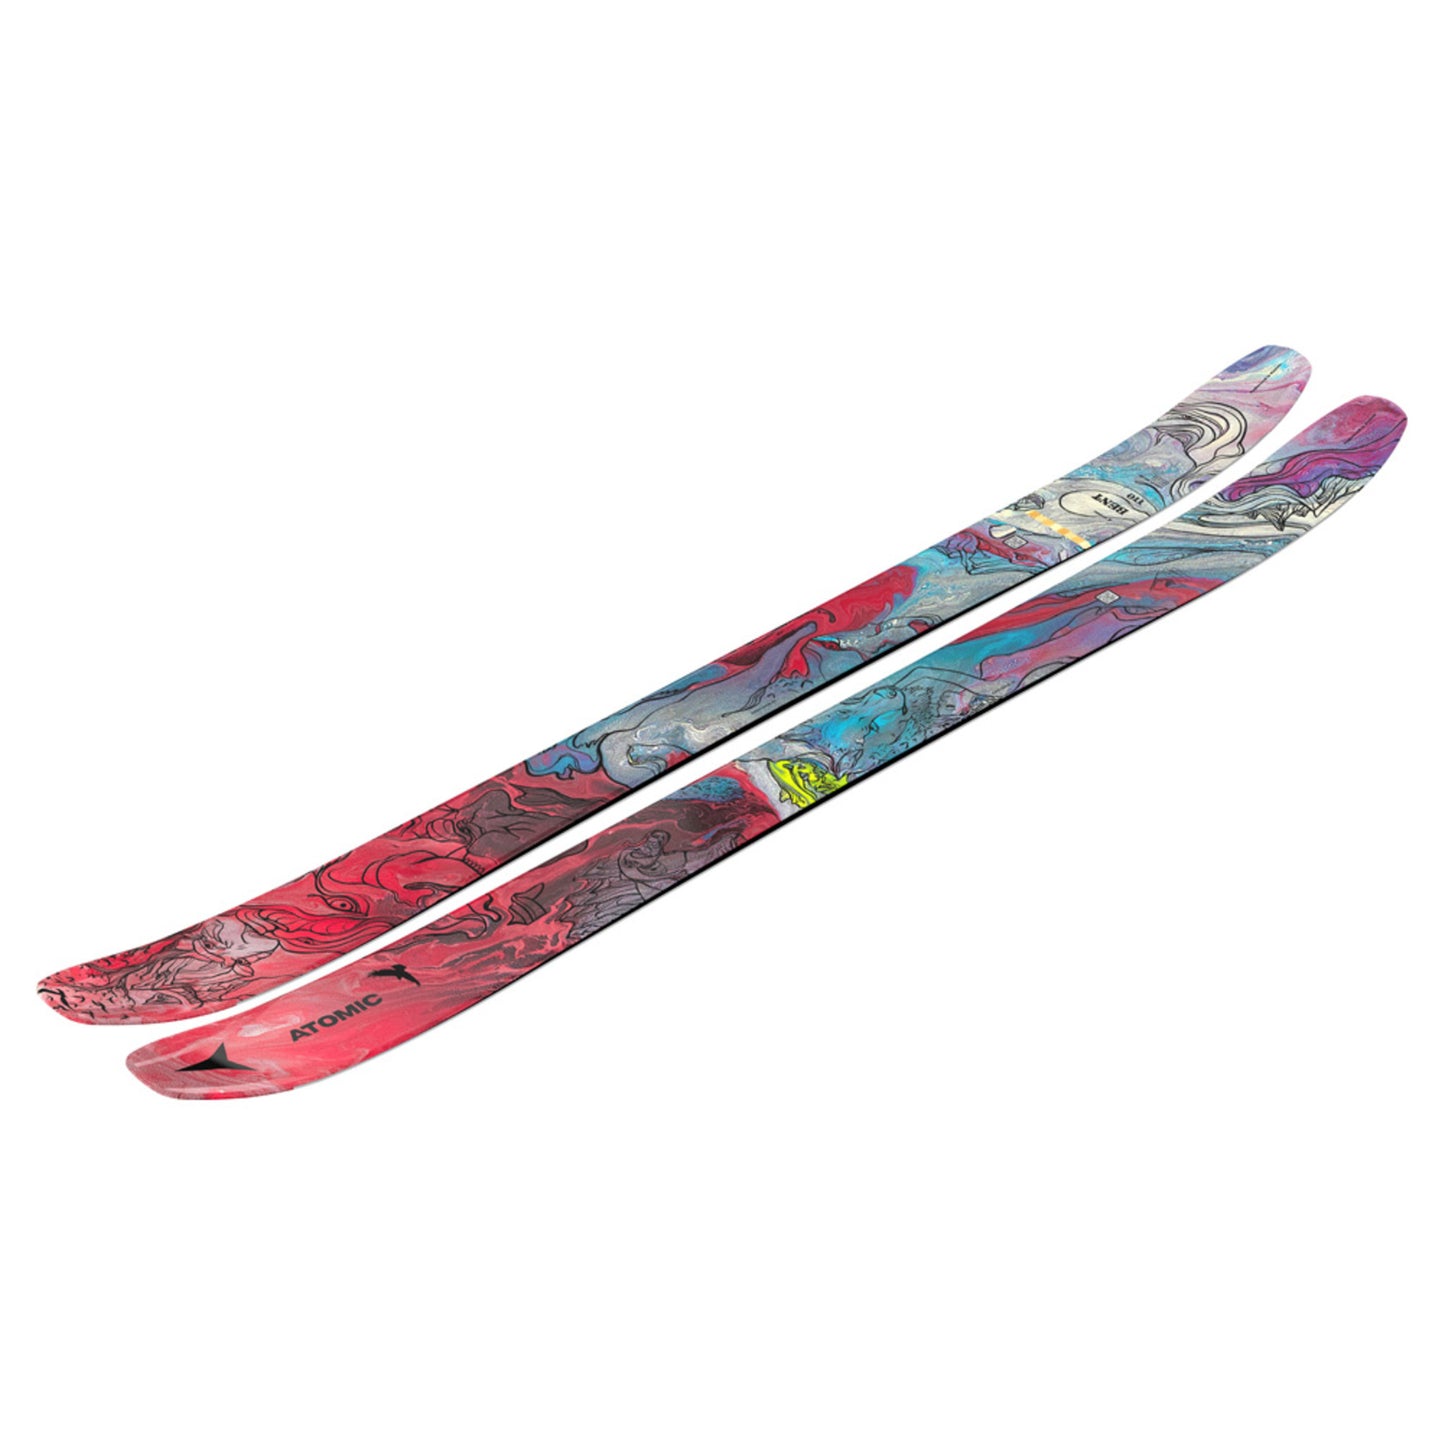 2023 Atomic Bent 110 Skis - 188